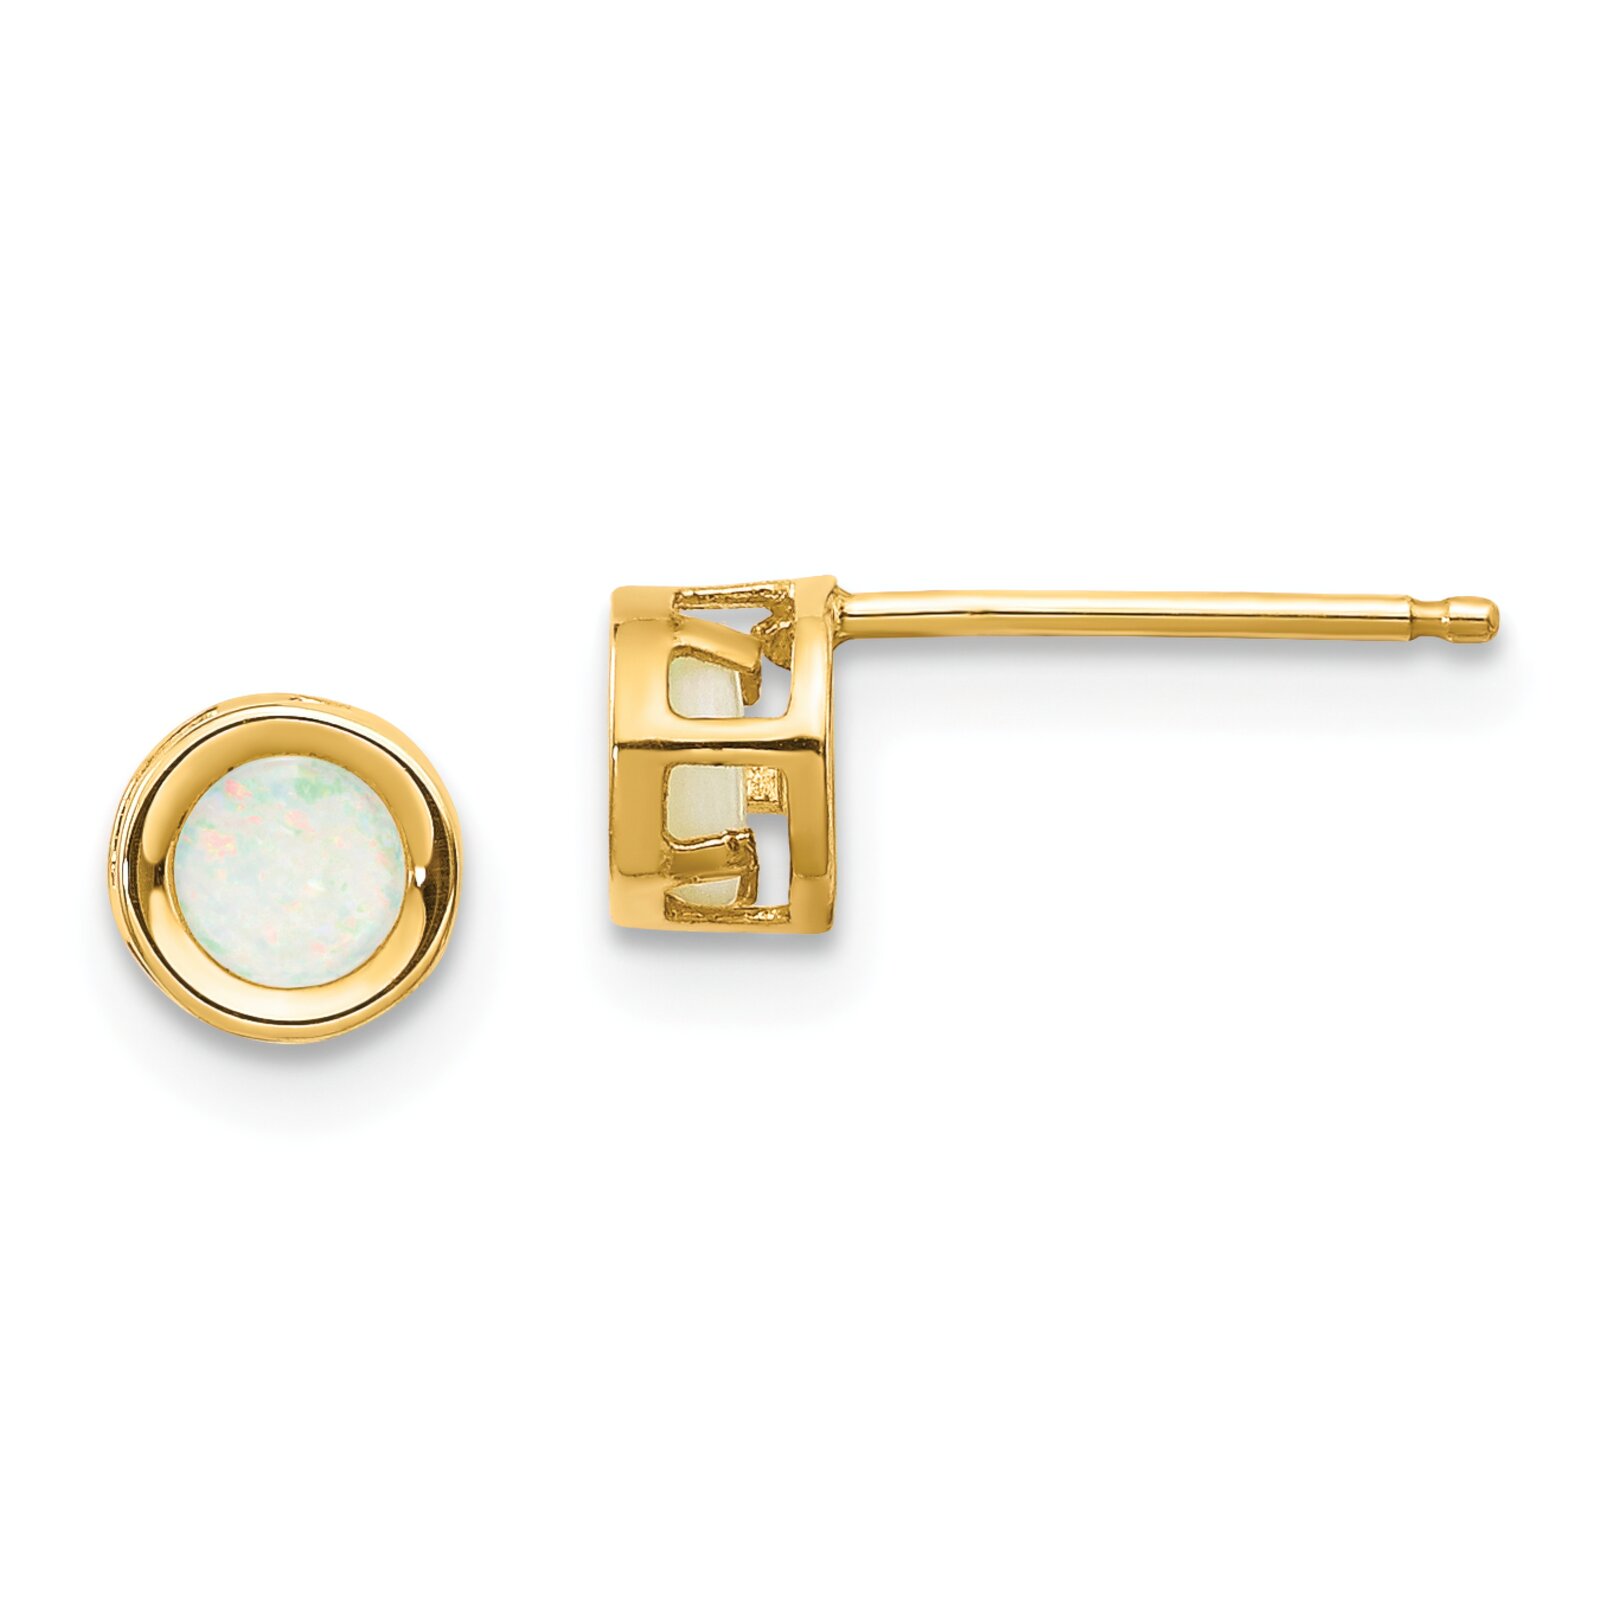 Findingking 14K Gold 4mm October Opal Stud Earrings Jewelry